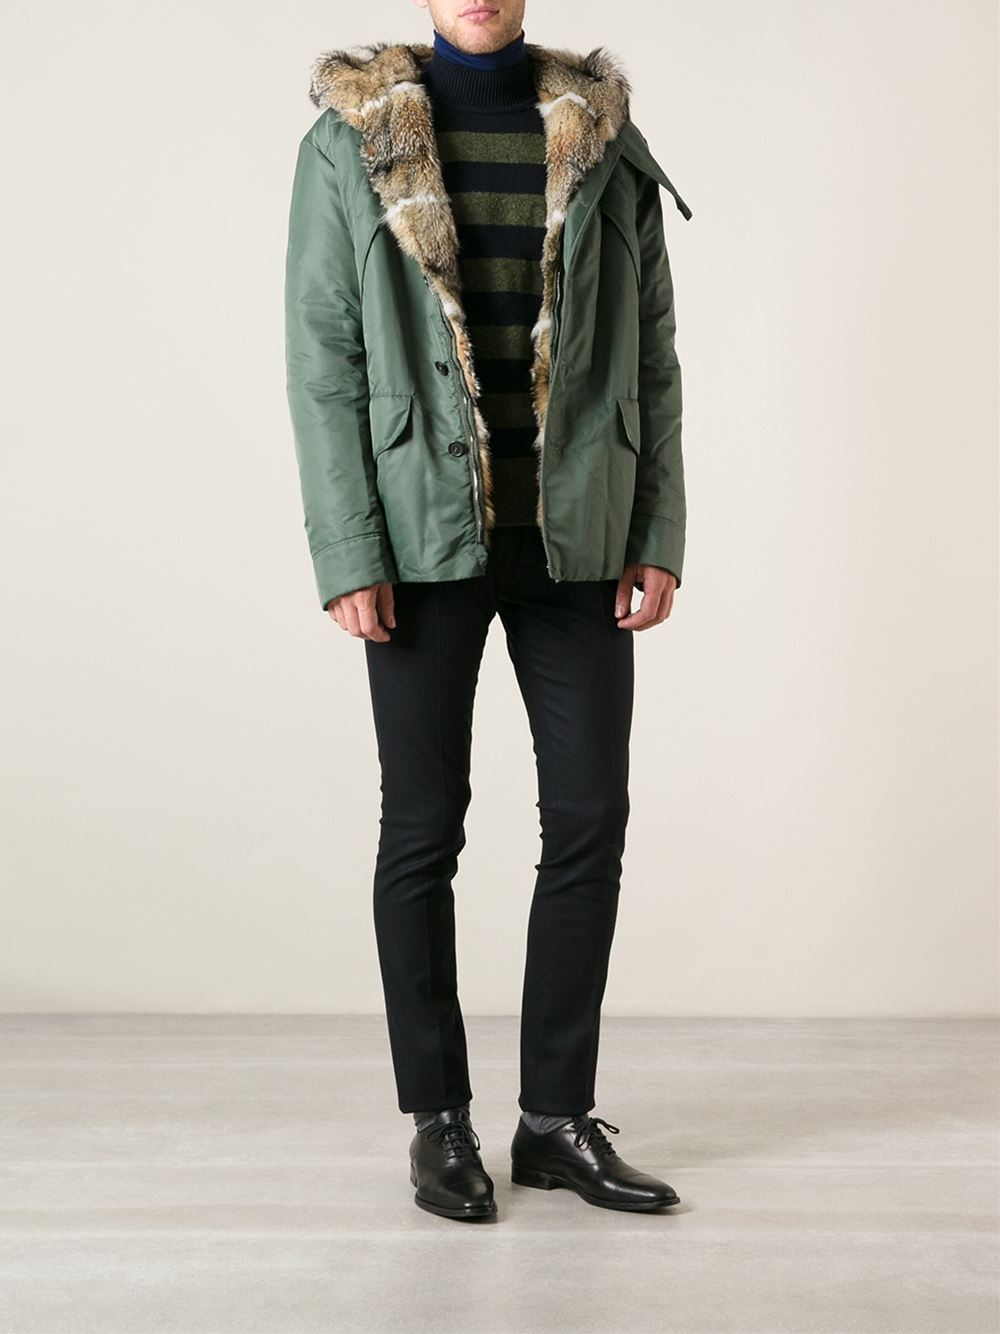 Ermanno Scervino Fur Hood Coat in Green for Men - Lyst